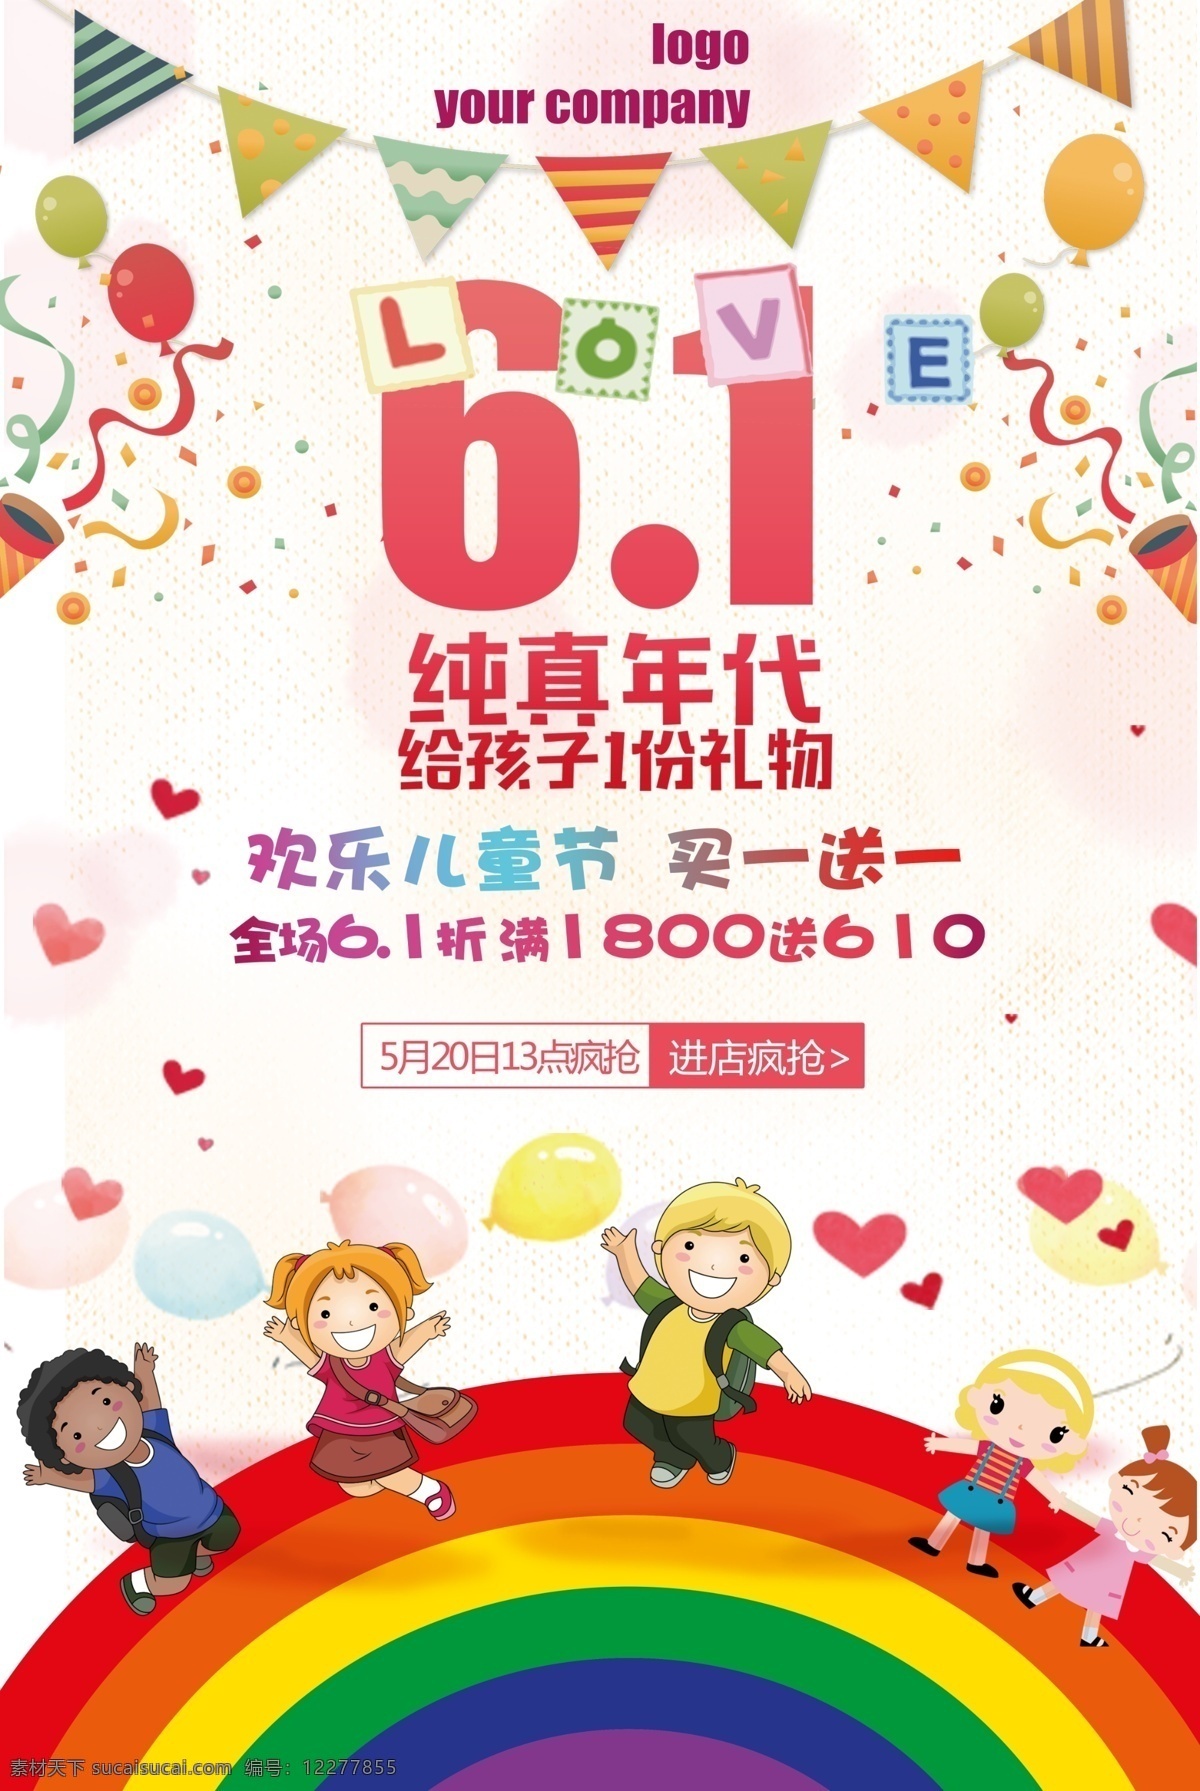 彩虹 小朋友 六 海报 儿童节 节日素材 psd素材 儿童节海报 六一展架